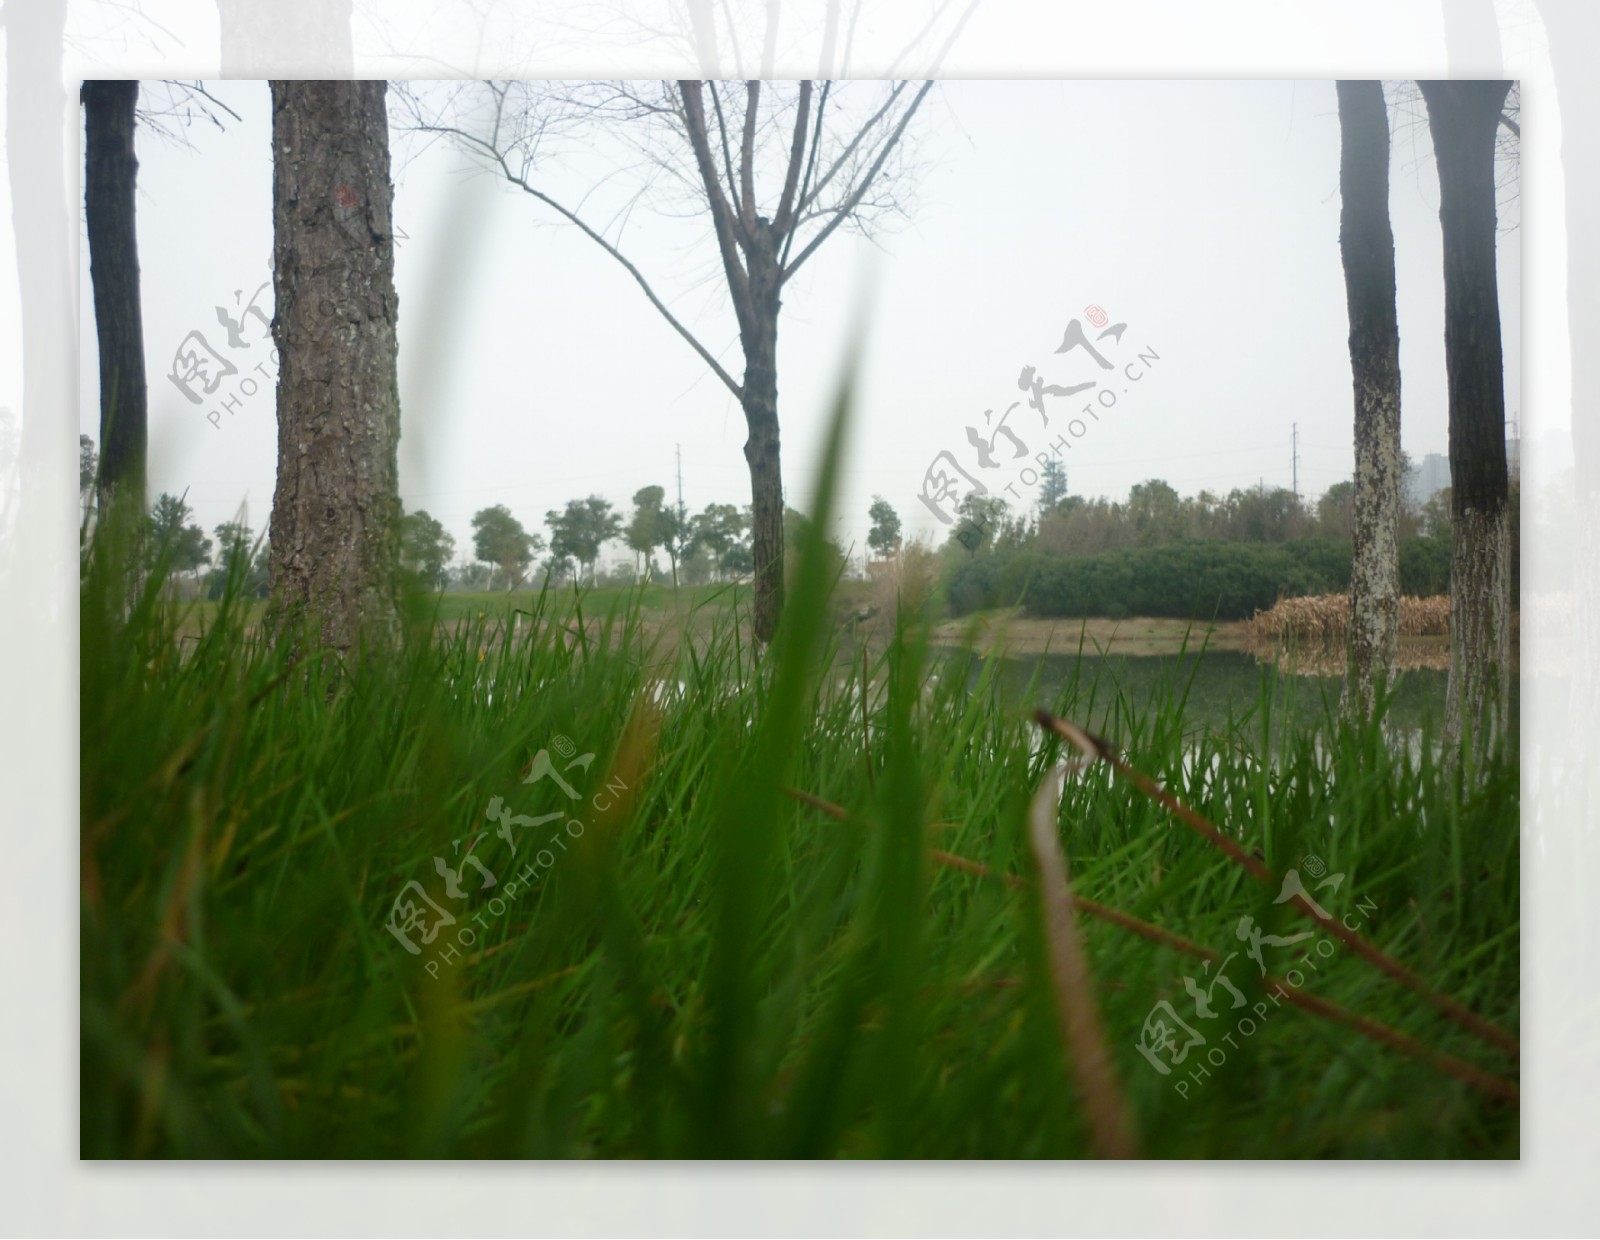 艾溪湖湿地公园的春天图片